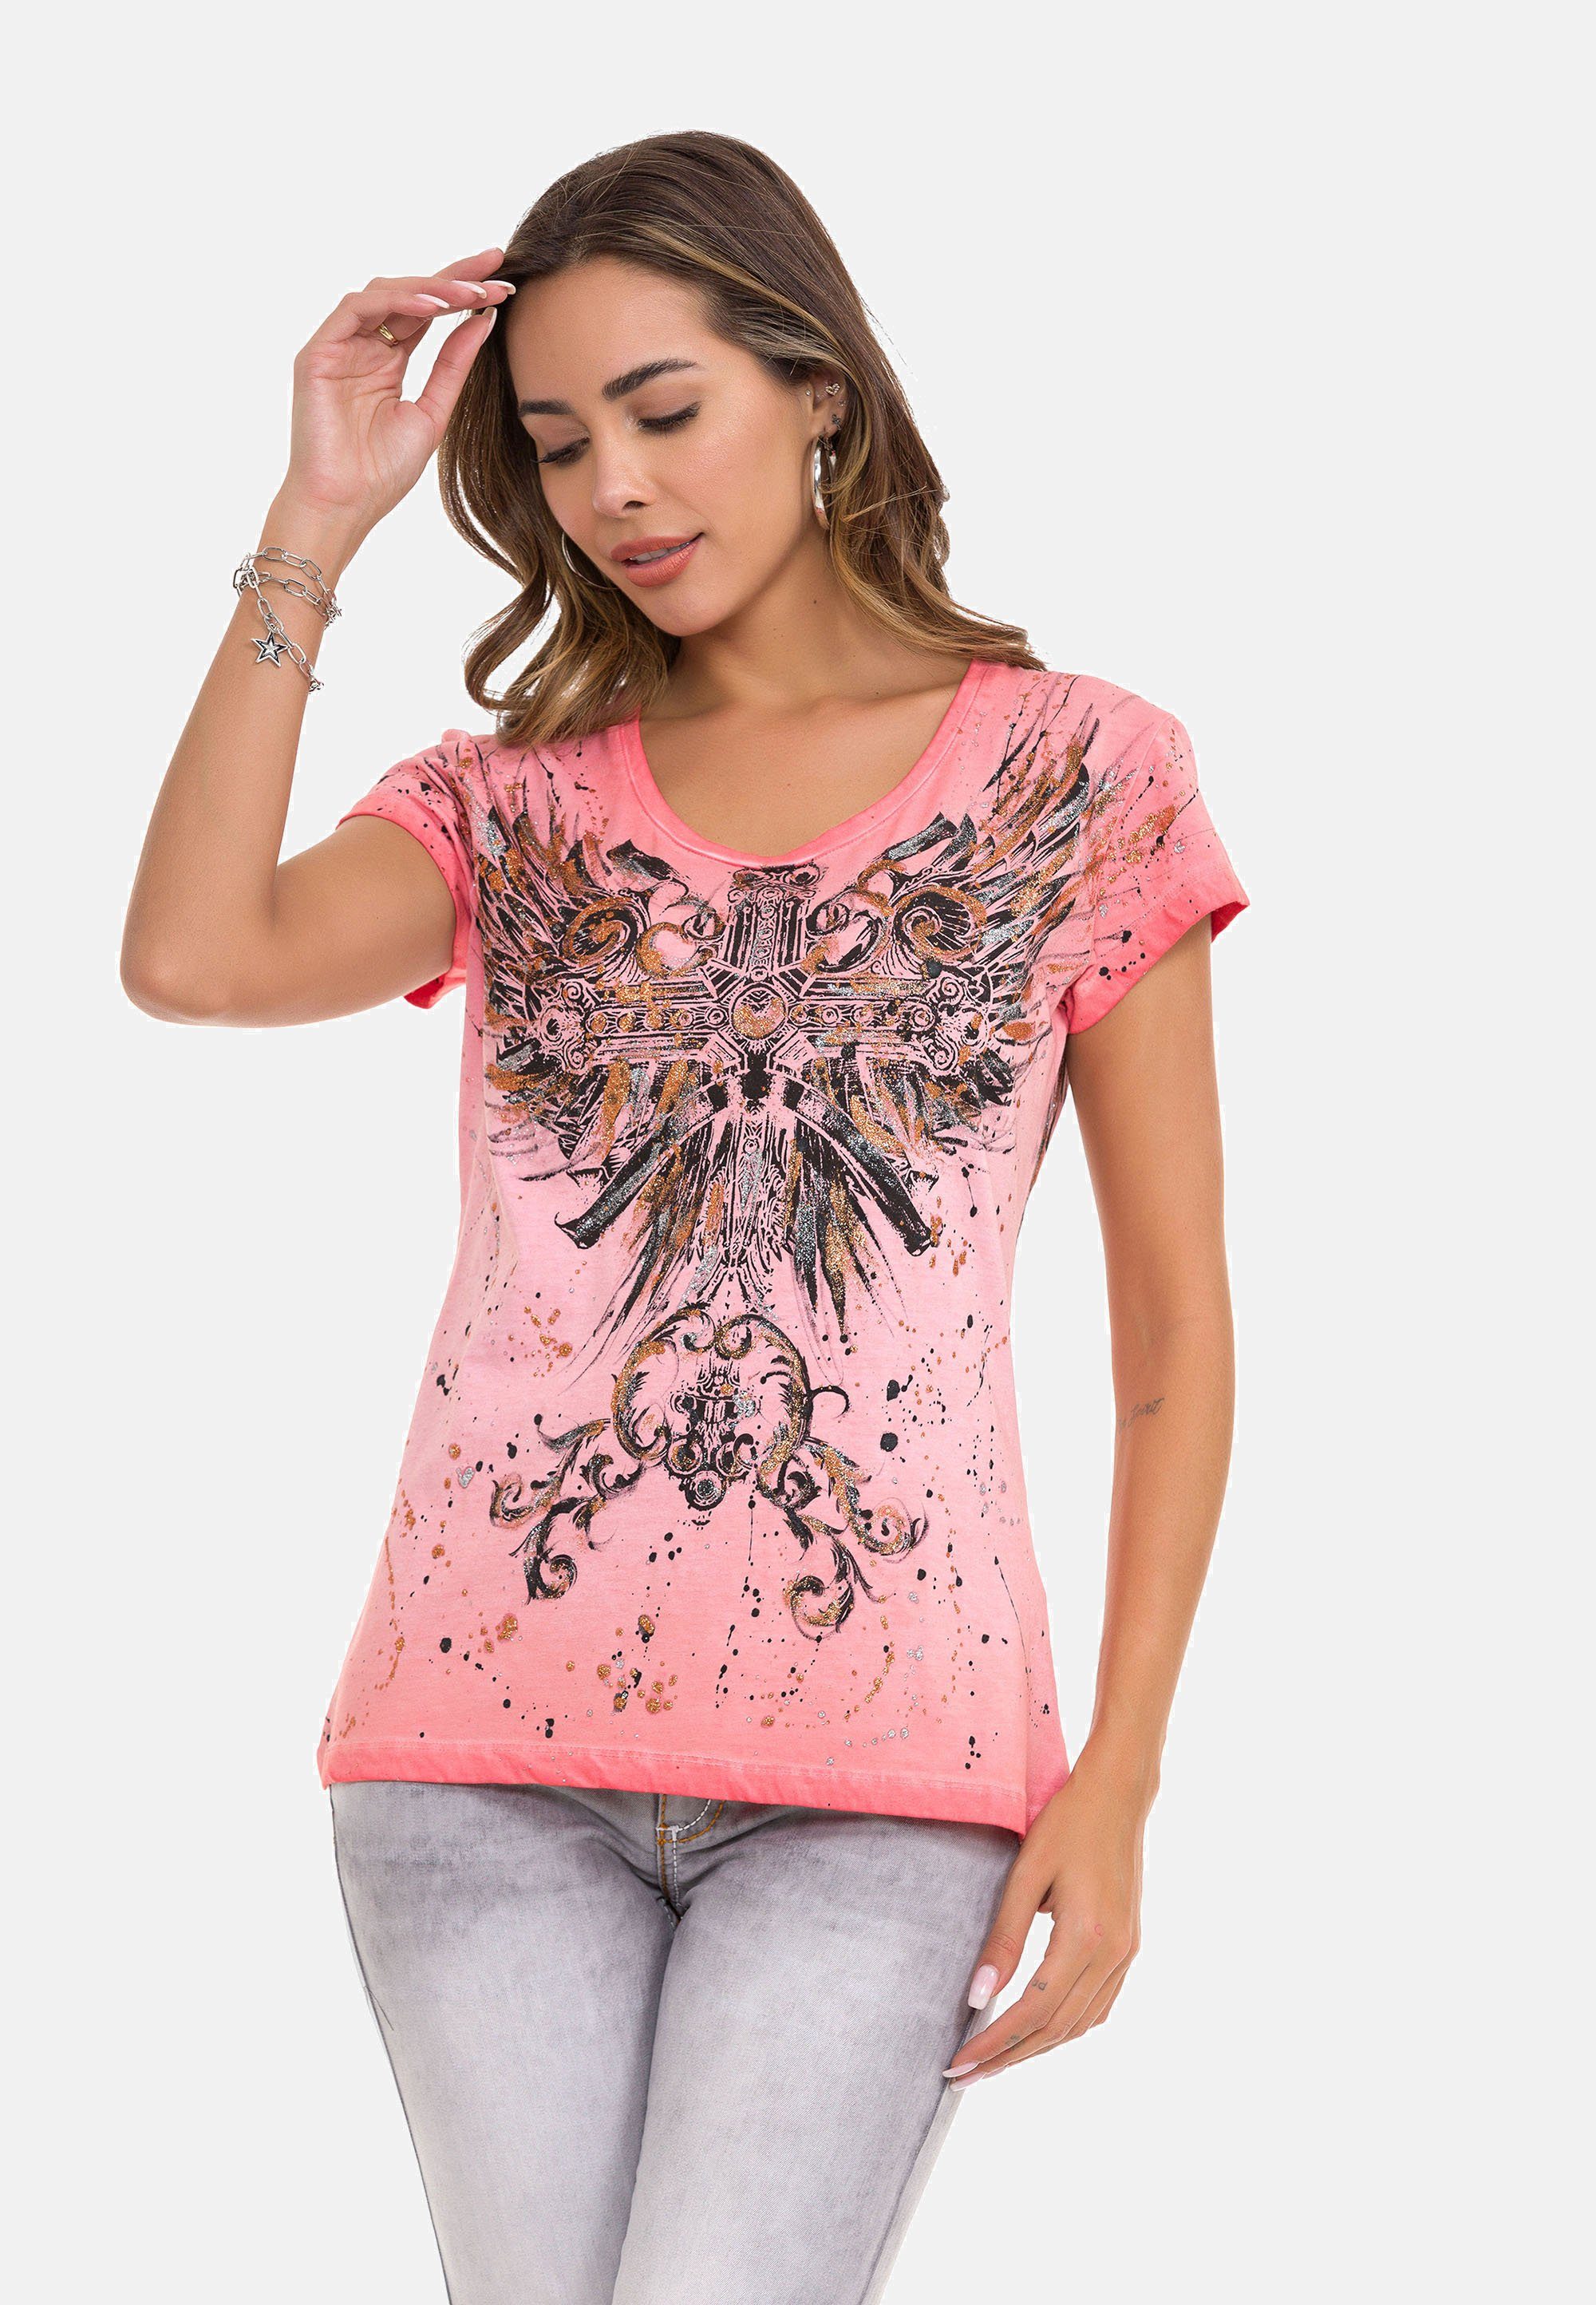 Zum günstigen Preis erhalten! Cipo & Baxx T-Shirt mit großflächiger rosa Print